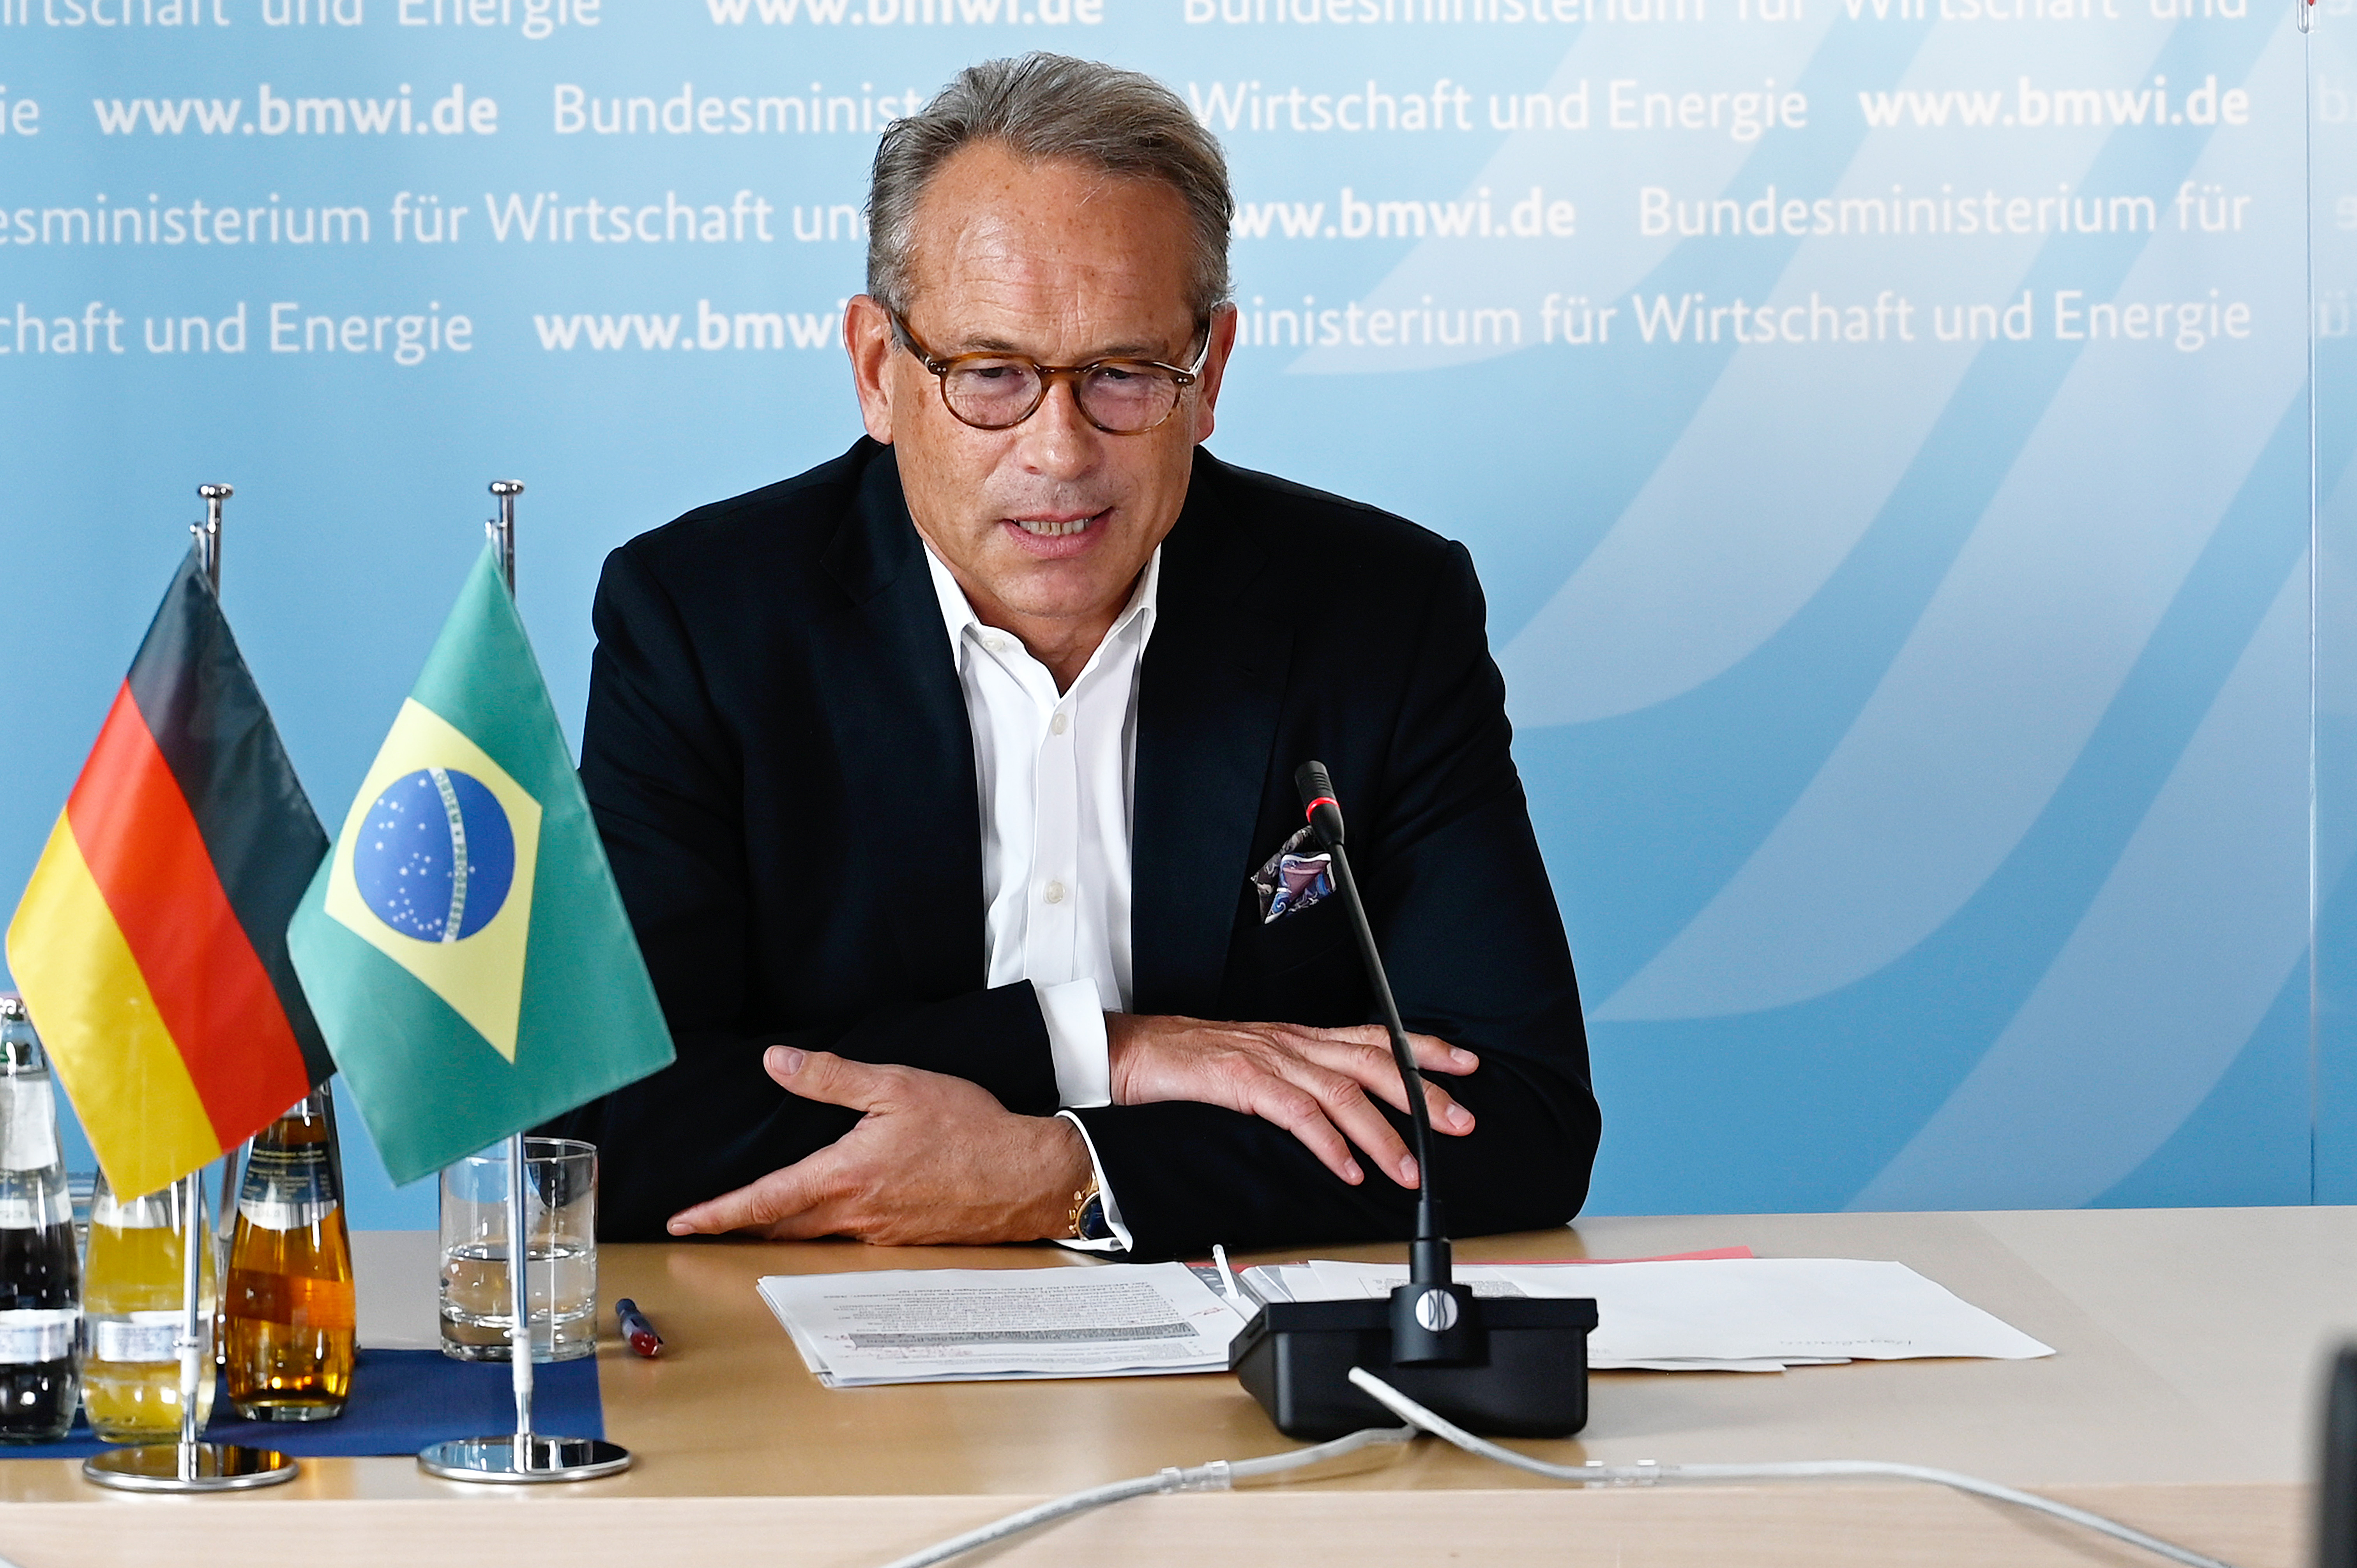 irtueller Minister Talk auf den Deutsch-Brasilianischen Wirtschaftstagen 